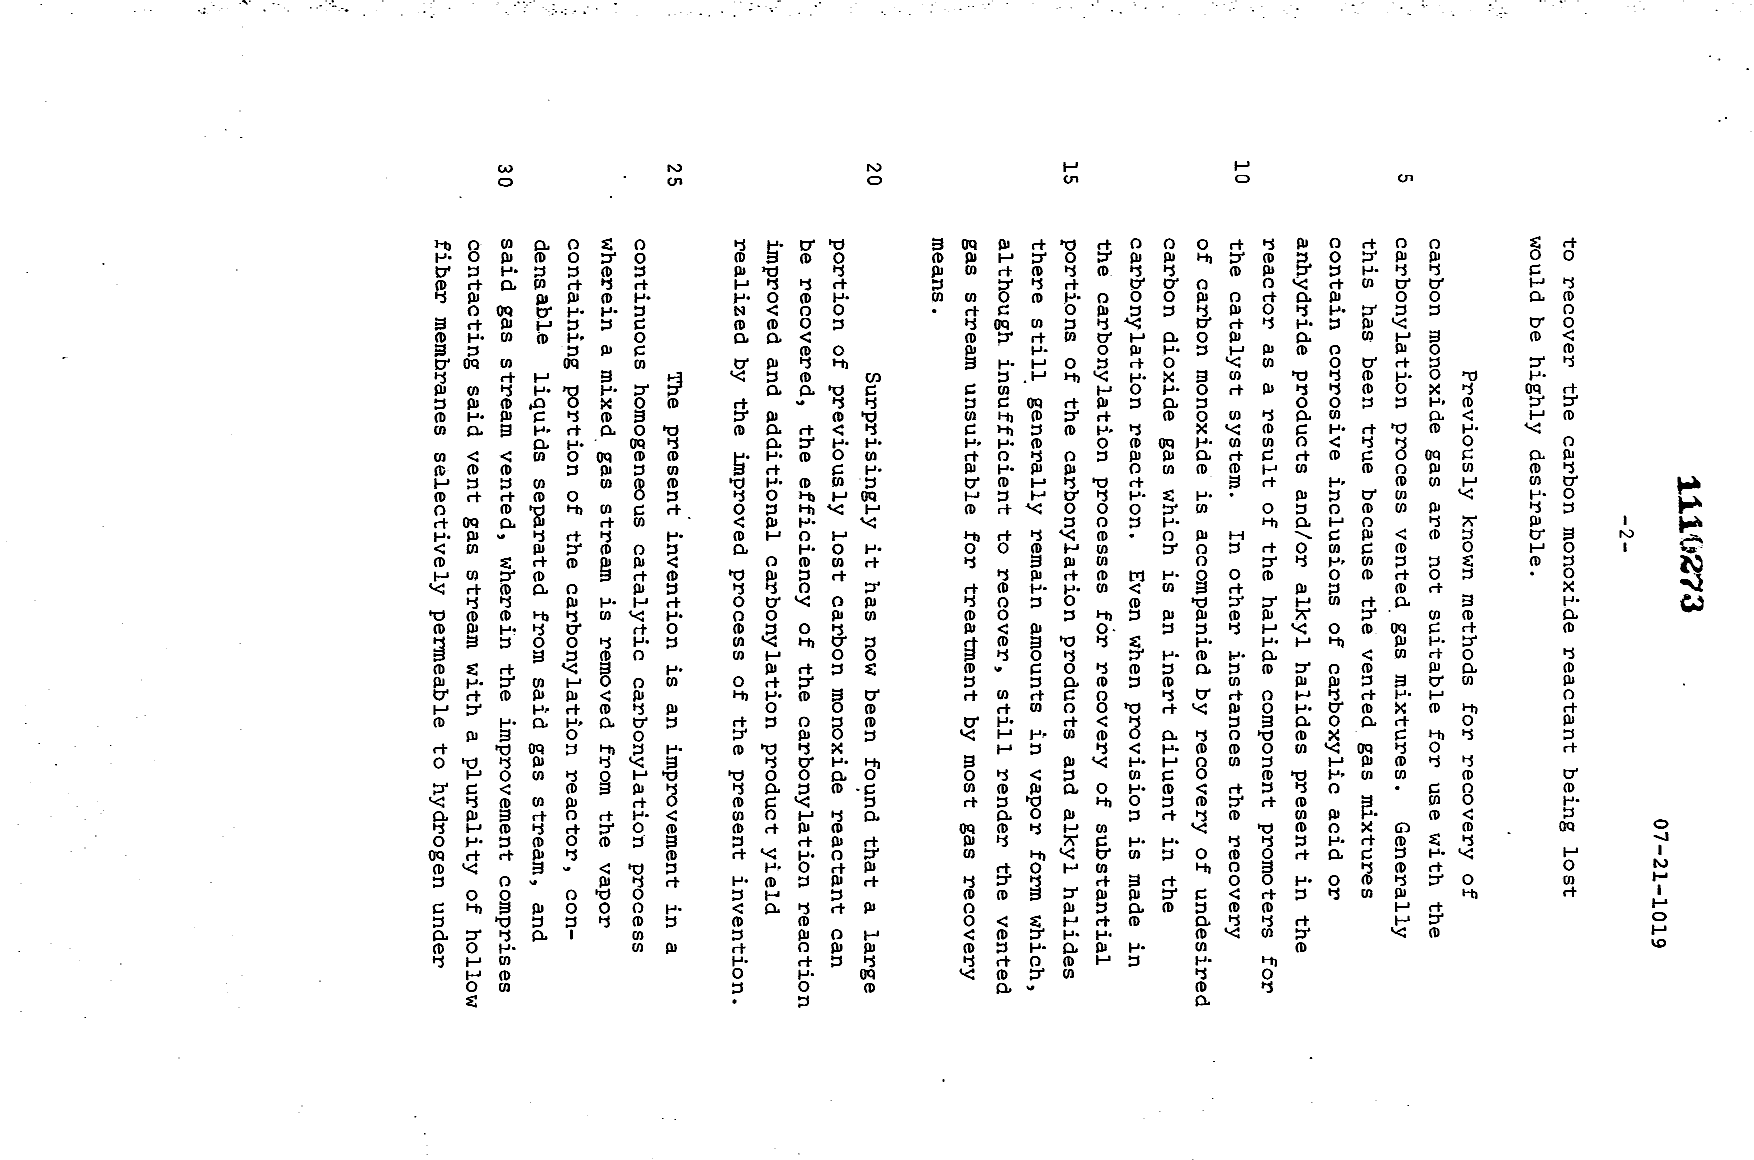 Canadian Patent Document 1110273. Description 19931224. Image 2 of 28